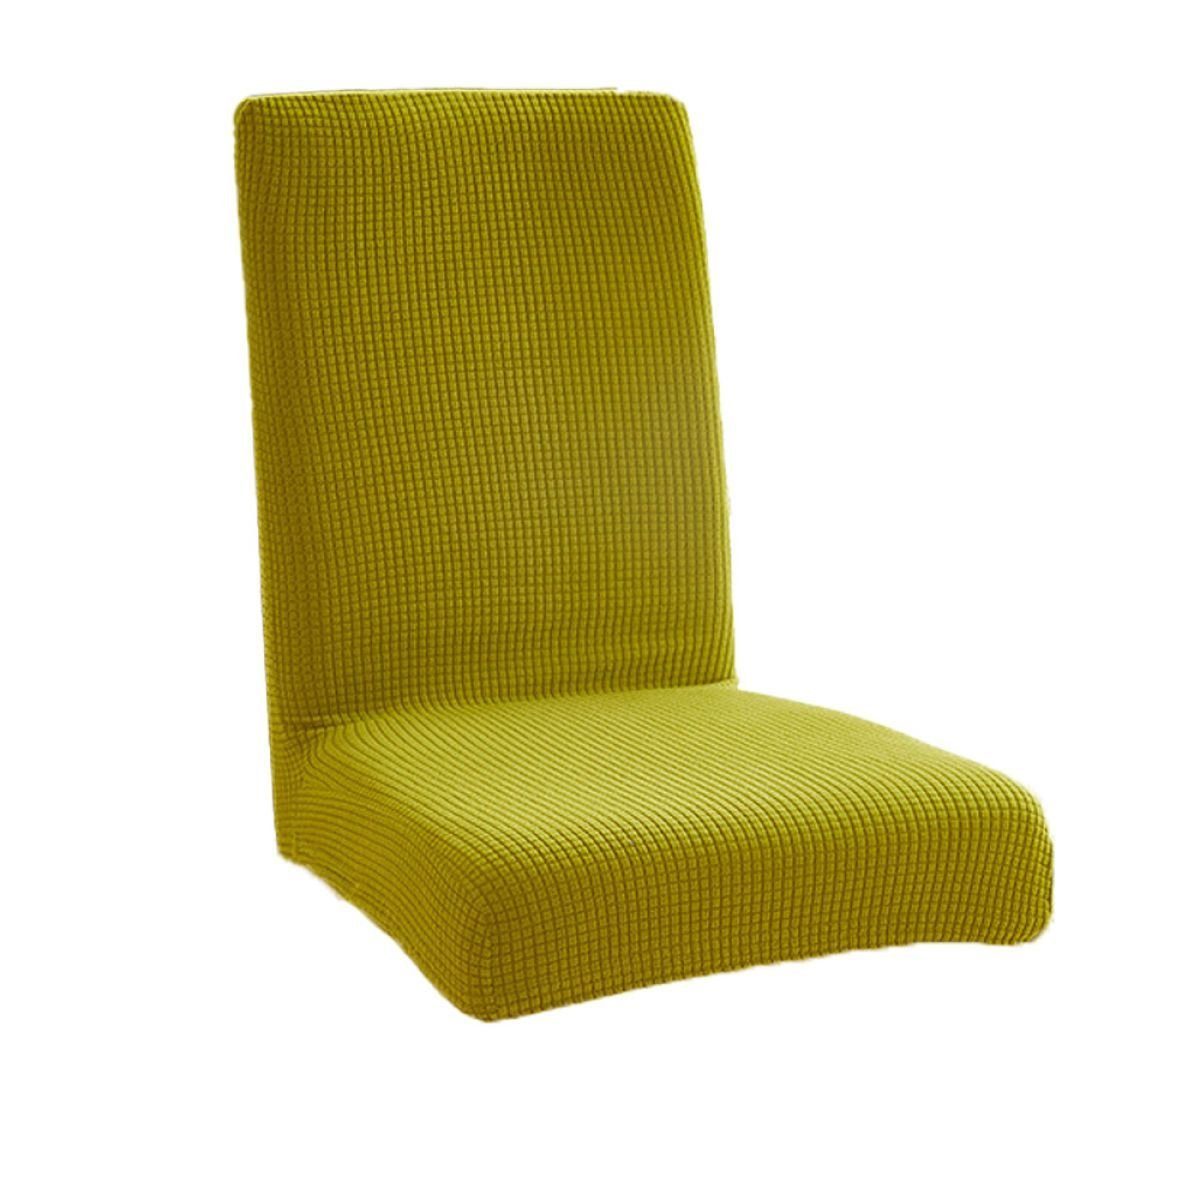 Stuhlbezug Stretch Abnehmbare Waschbar Stuhlbezug für Esszimmerstühle, Juoungle Grünlich-gelb